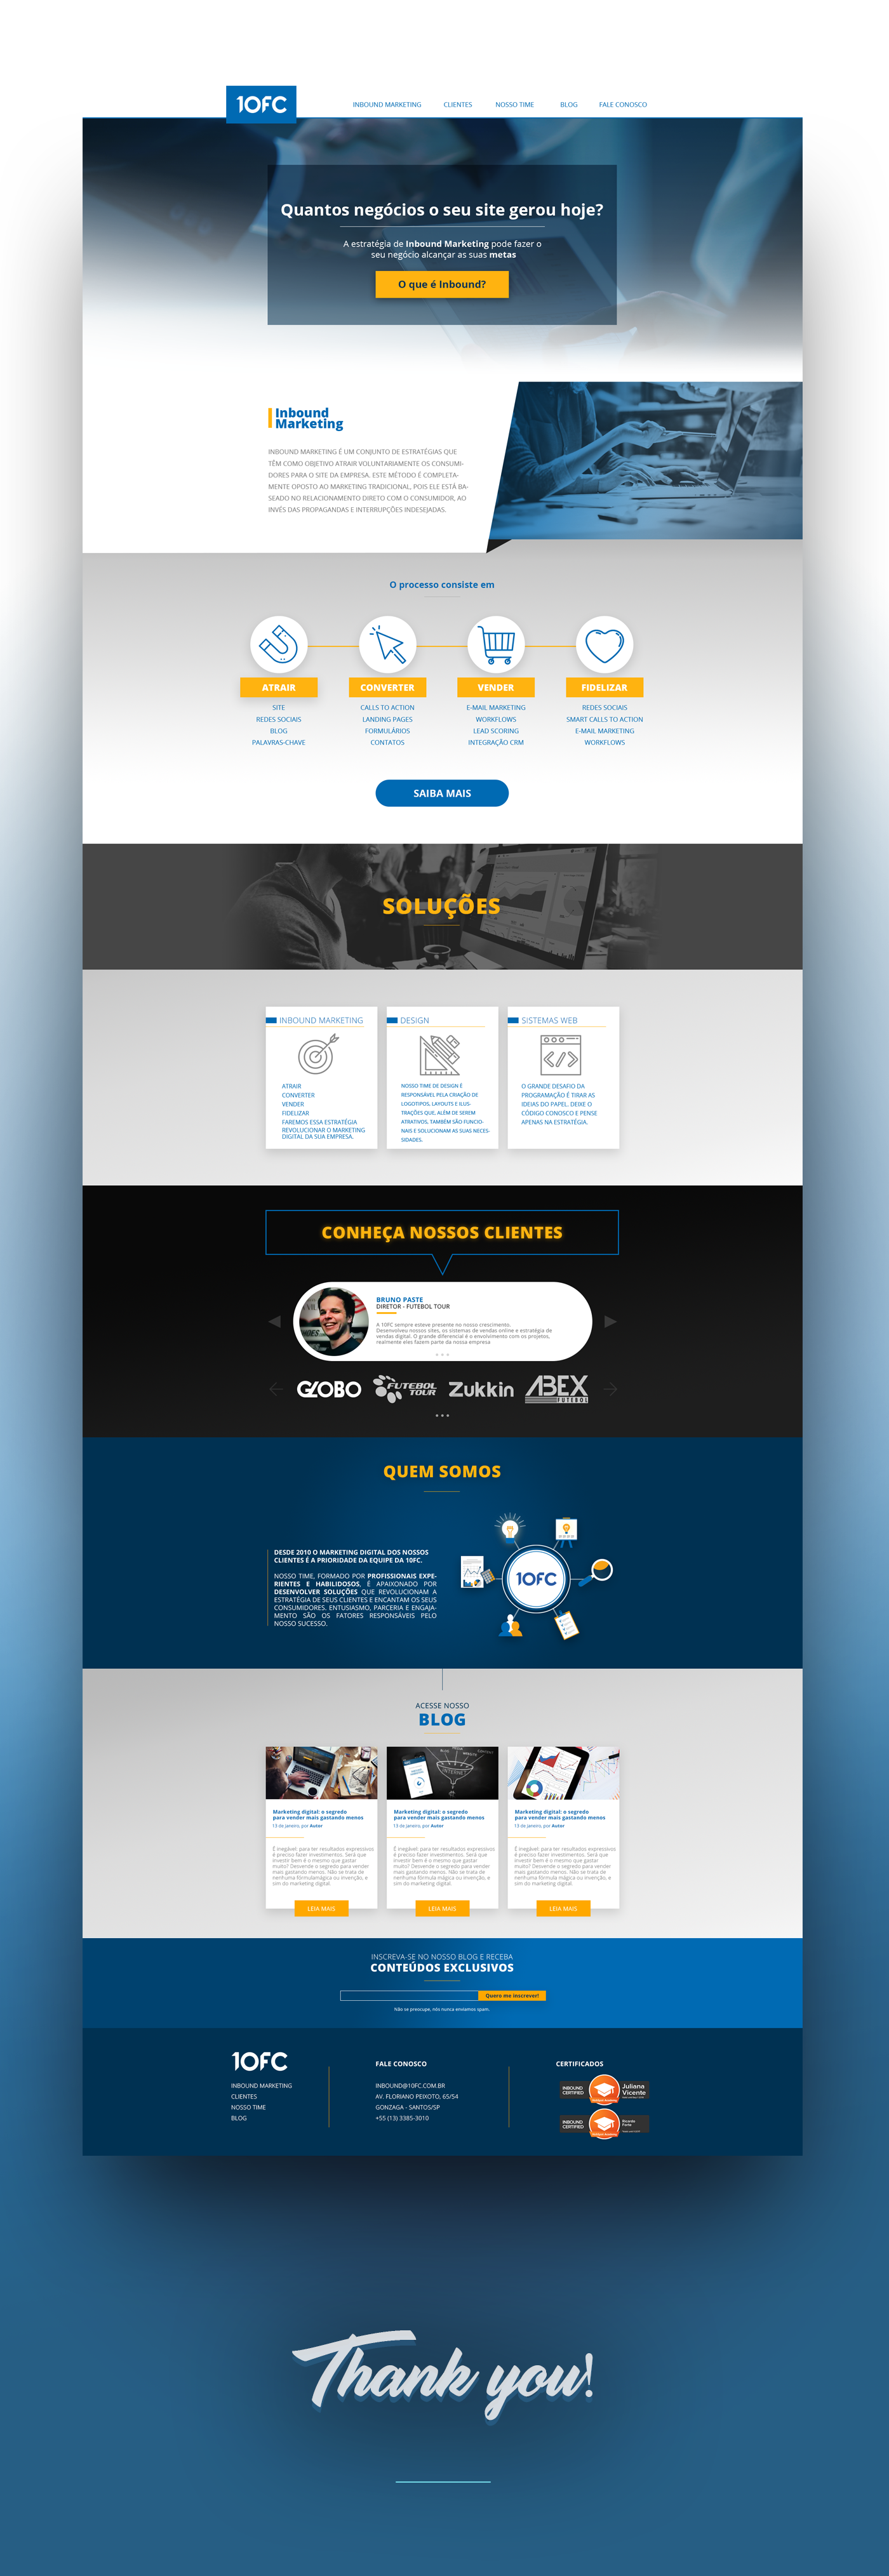 front-end Web Design  Layout ui design user interface Website user interface design web site layout digital design digital